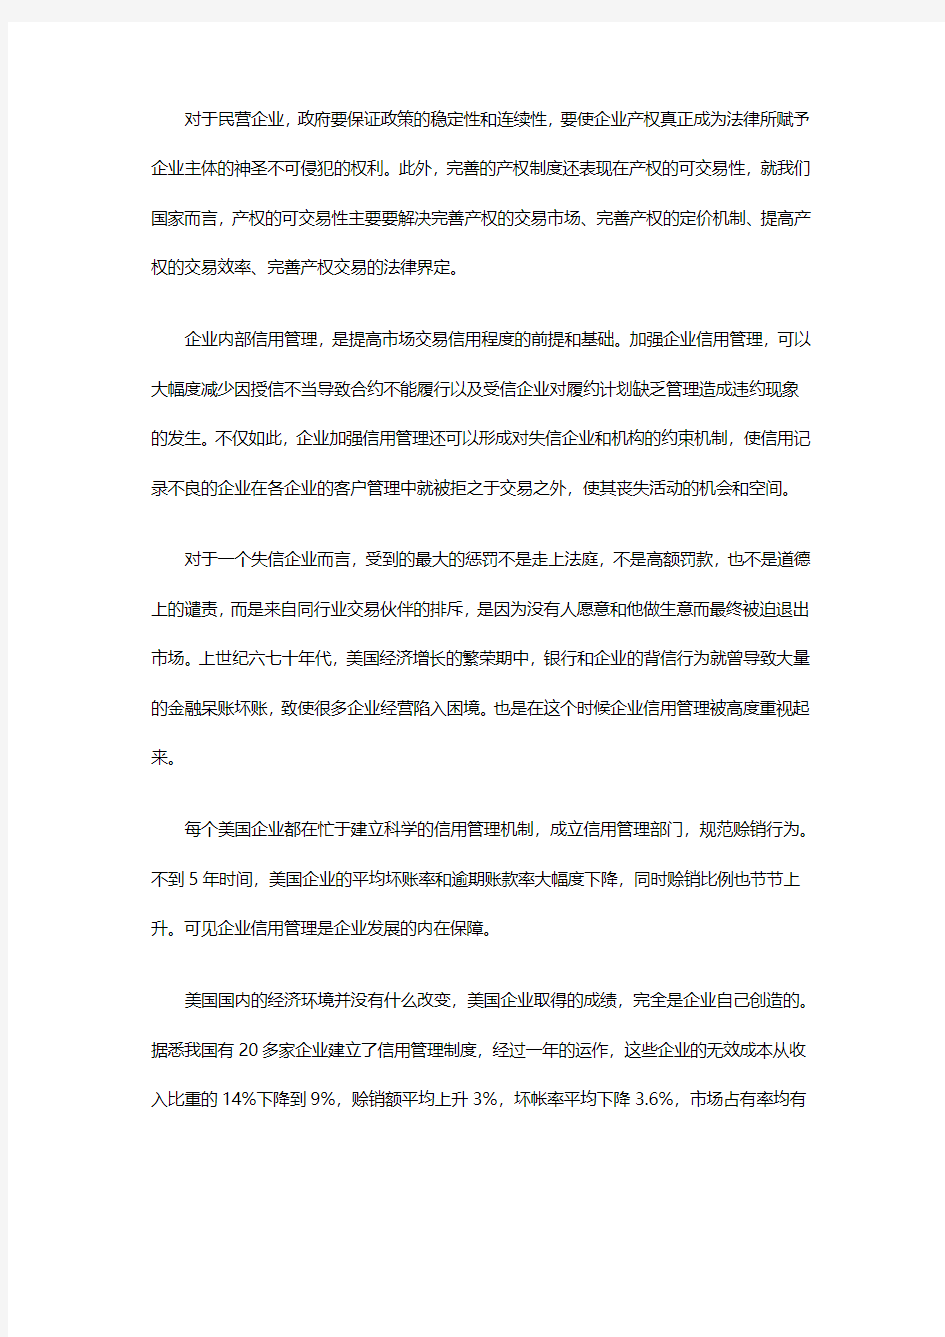 重庆市企业信用制度